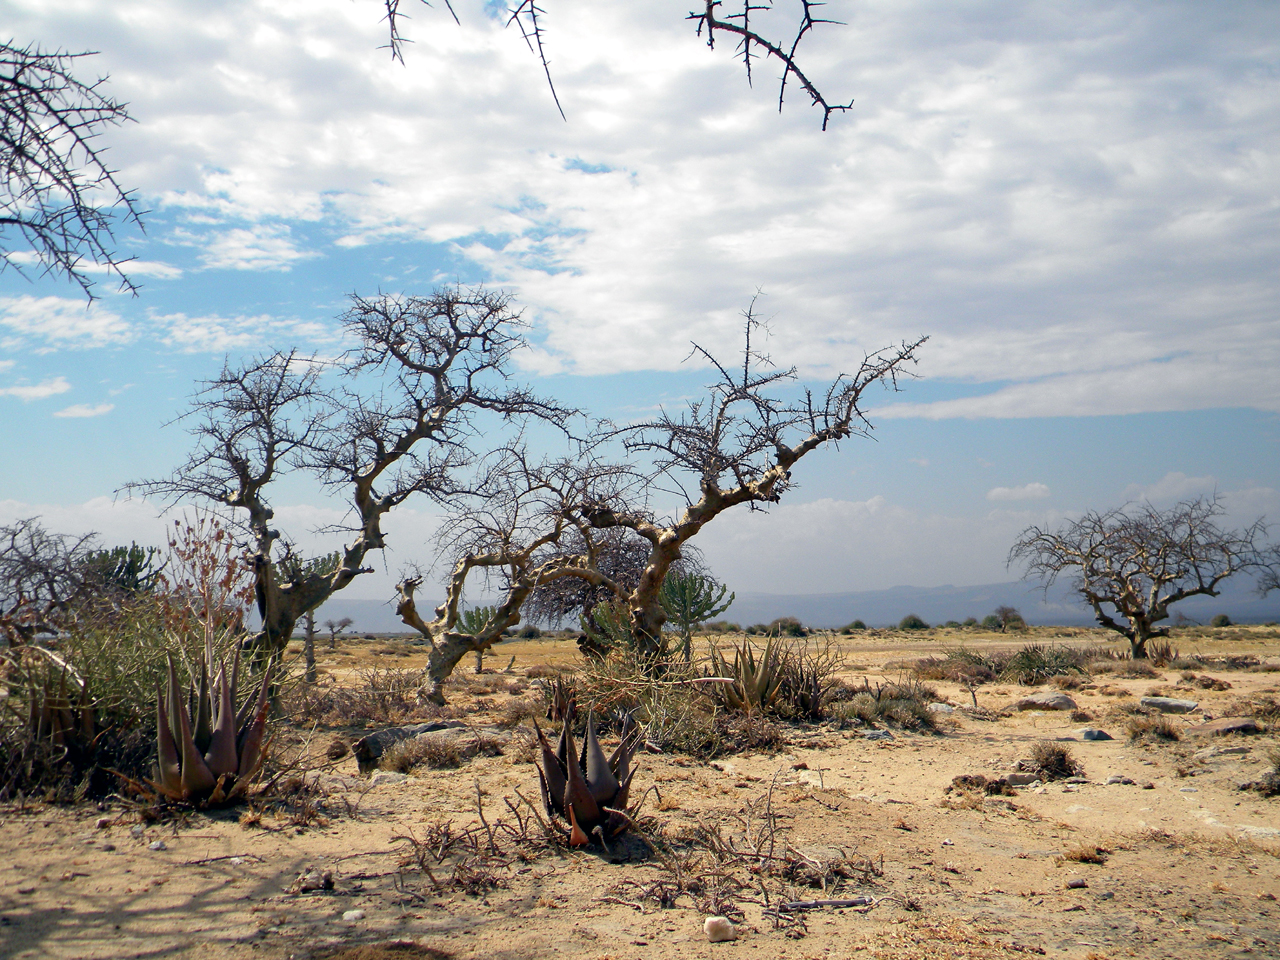 바오밥 나무 군락 다음으로 황량한 사바나 평원이 나타난다.
탄자니아 최고봉인 메루산(4565m)과 킬리만자로산(5895m)이 있는 아루샤와 모시는 일년중 우기가 두 번으로 녹음이 우거져 있다. 반면 이 두 도시를 벗어나면 우기는 일년중 한 번뿐인 사바나 기후로 황량한 풍경이 펼쳐진다.
